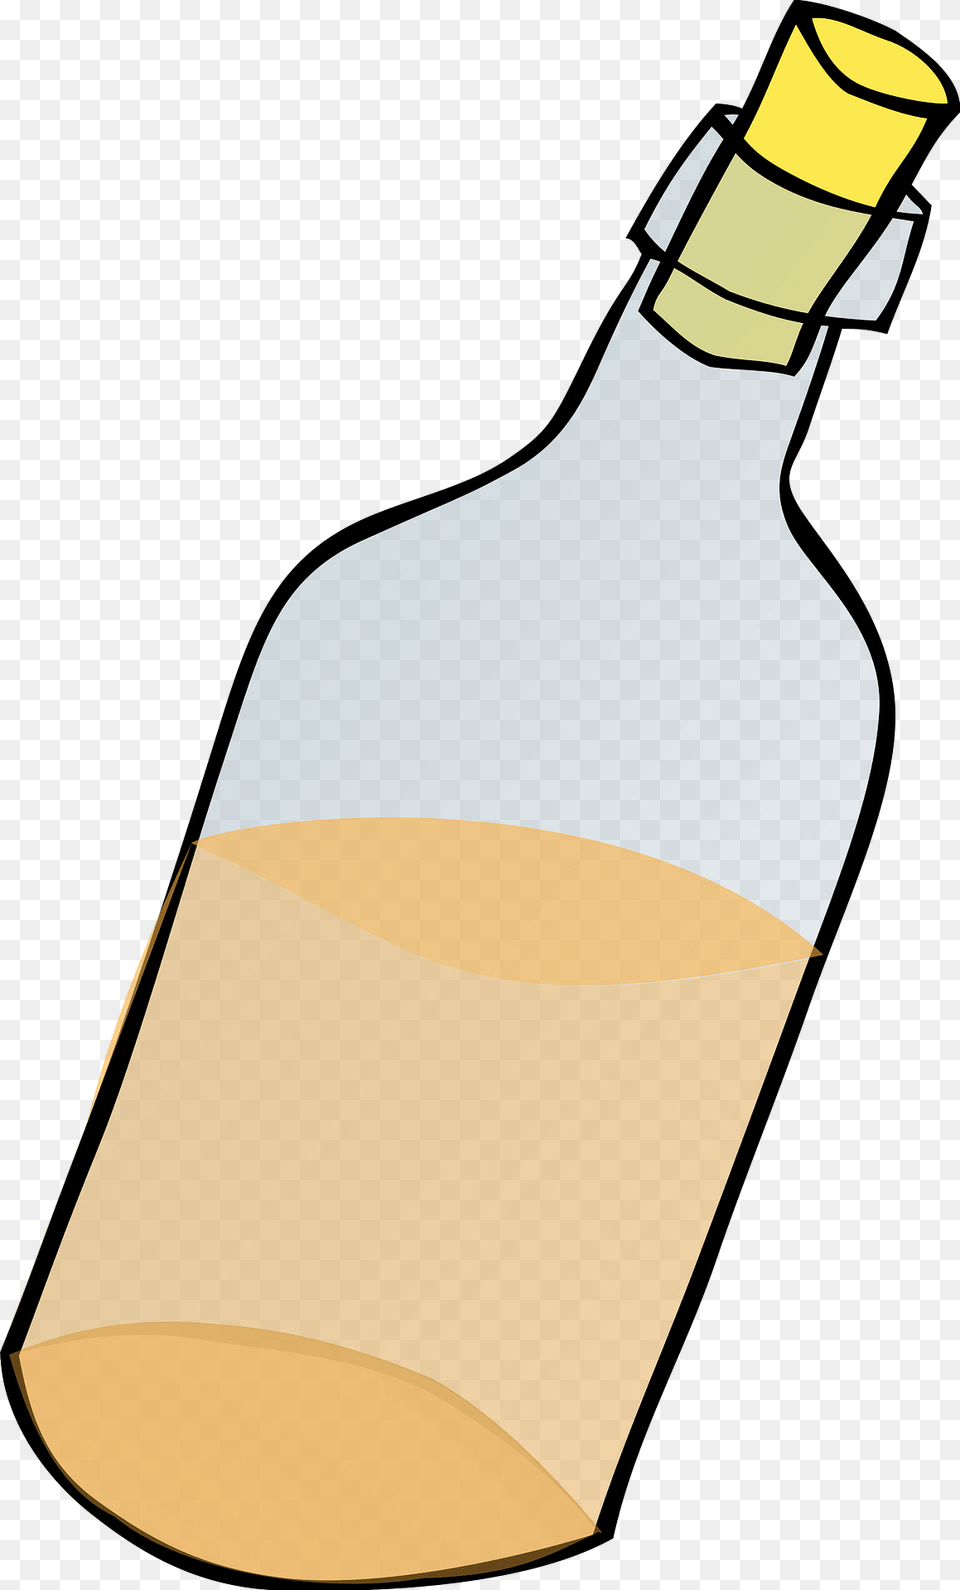 Bottle Clipart, Alcohol, Beverage, Liquor, Wine Free Transparent Png